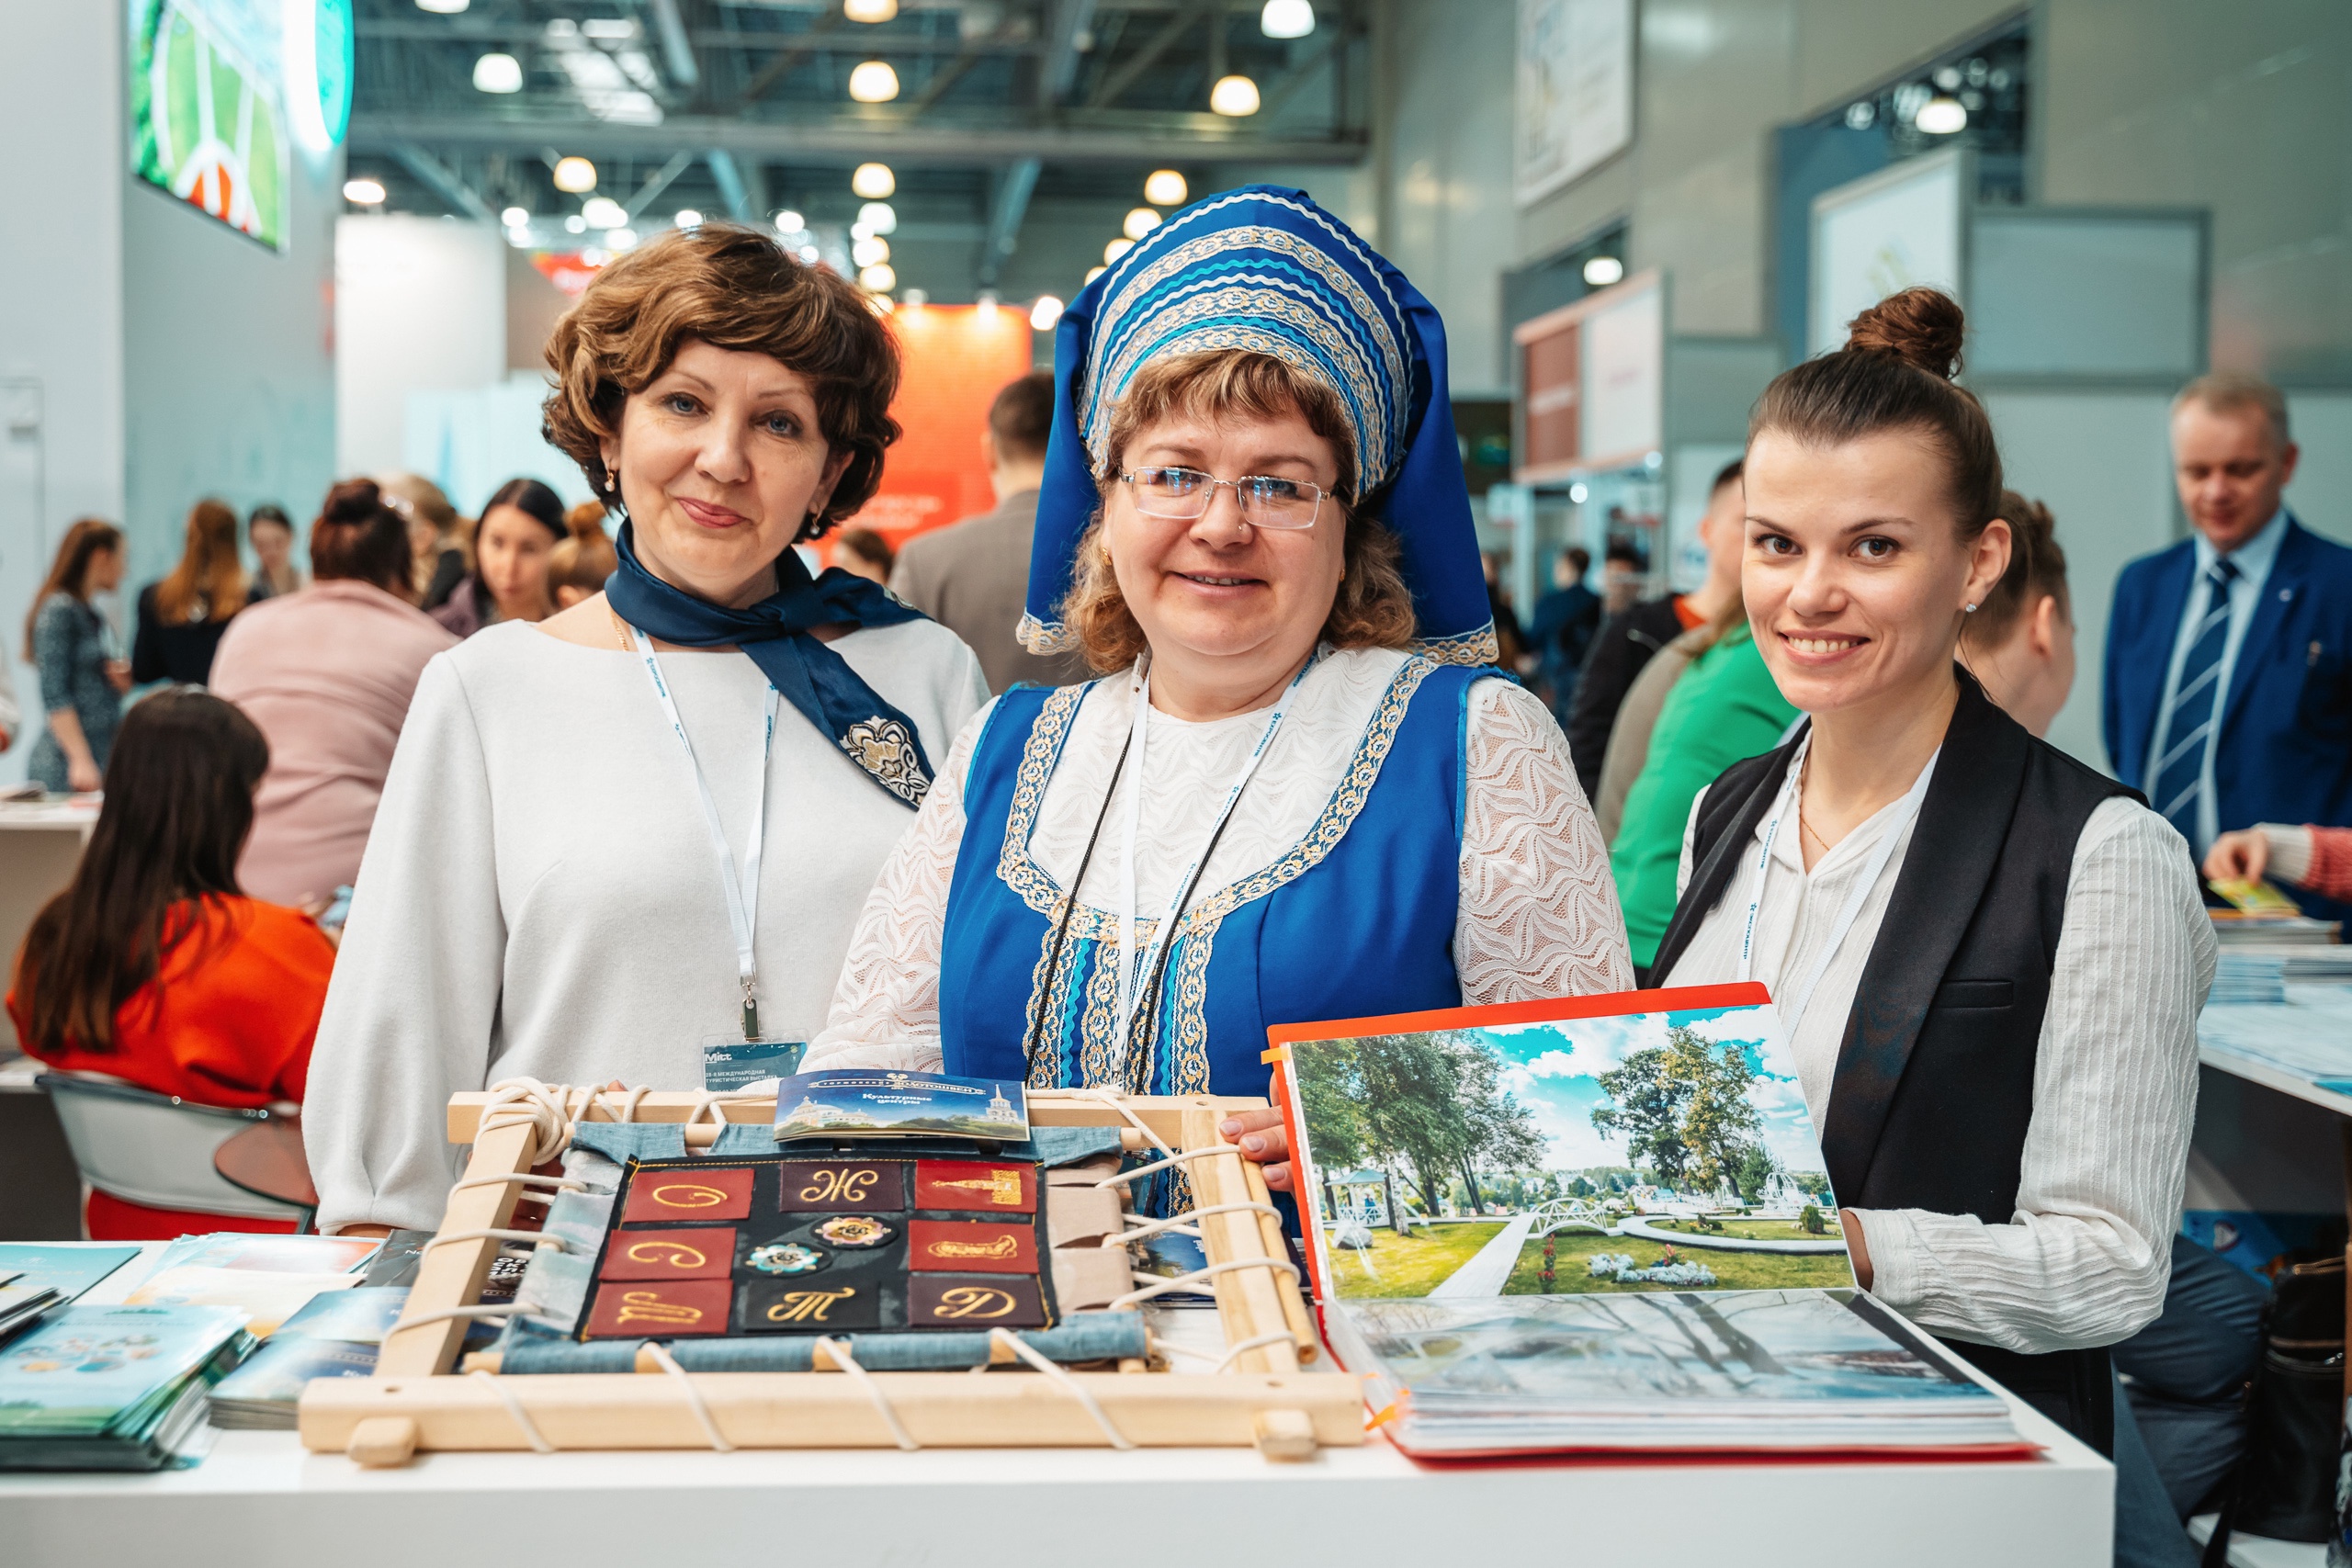 Тверской объединенный музей принял участие в Международной туристической выставке